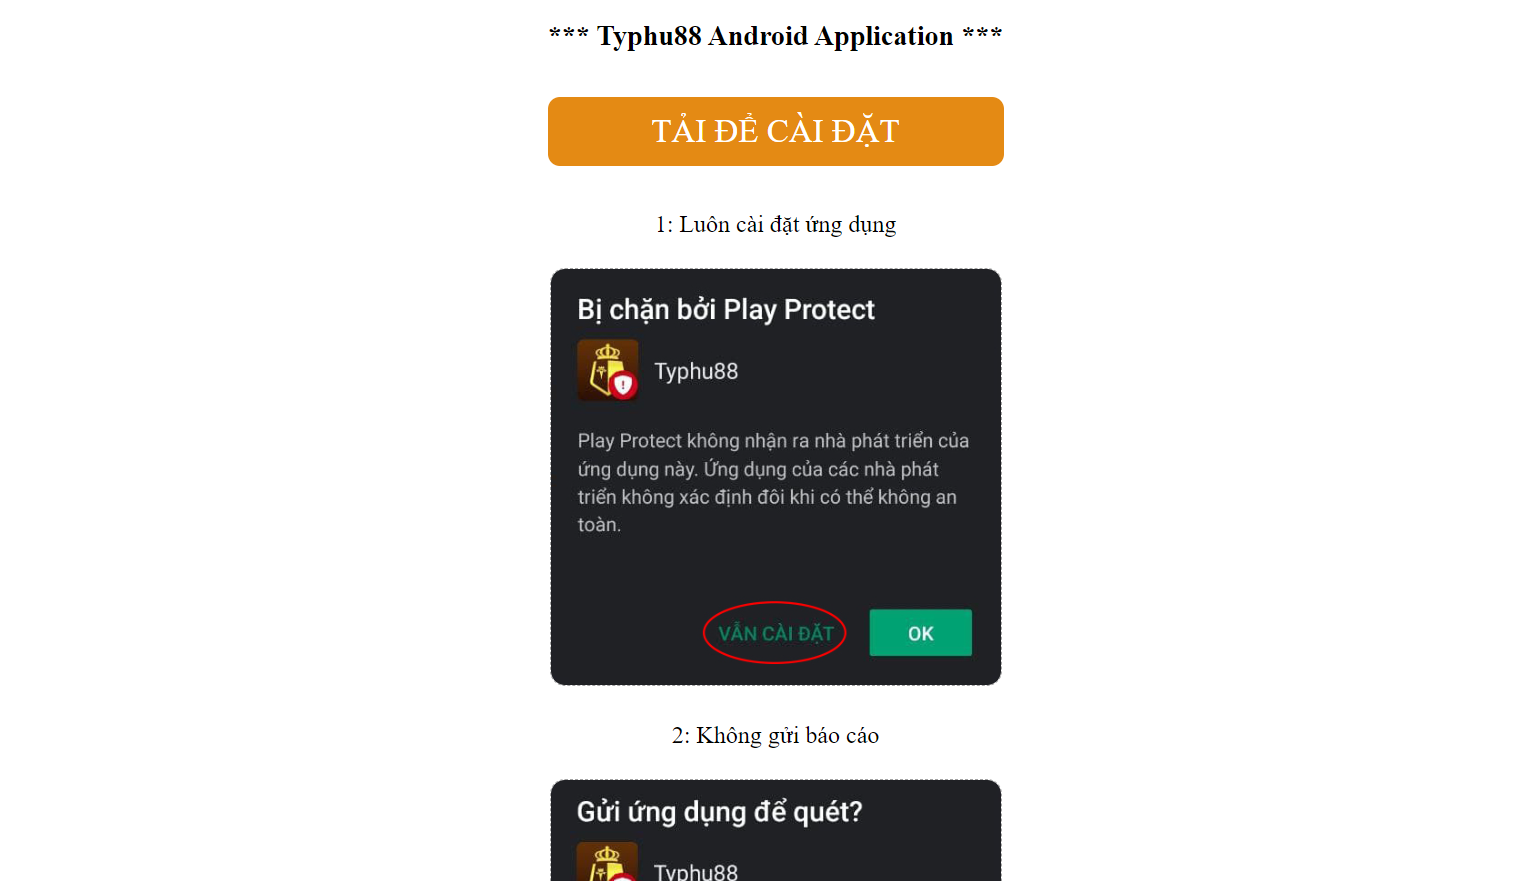 Cách tải app trên Typhu88 Android 